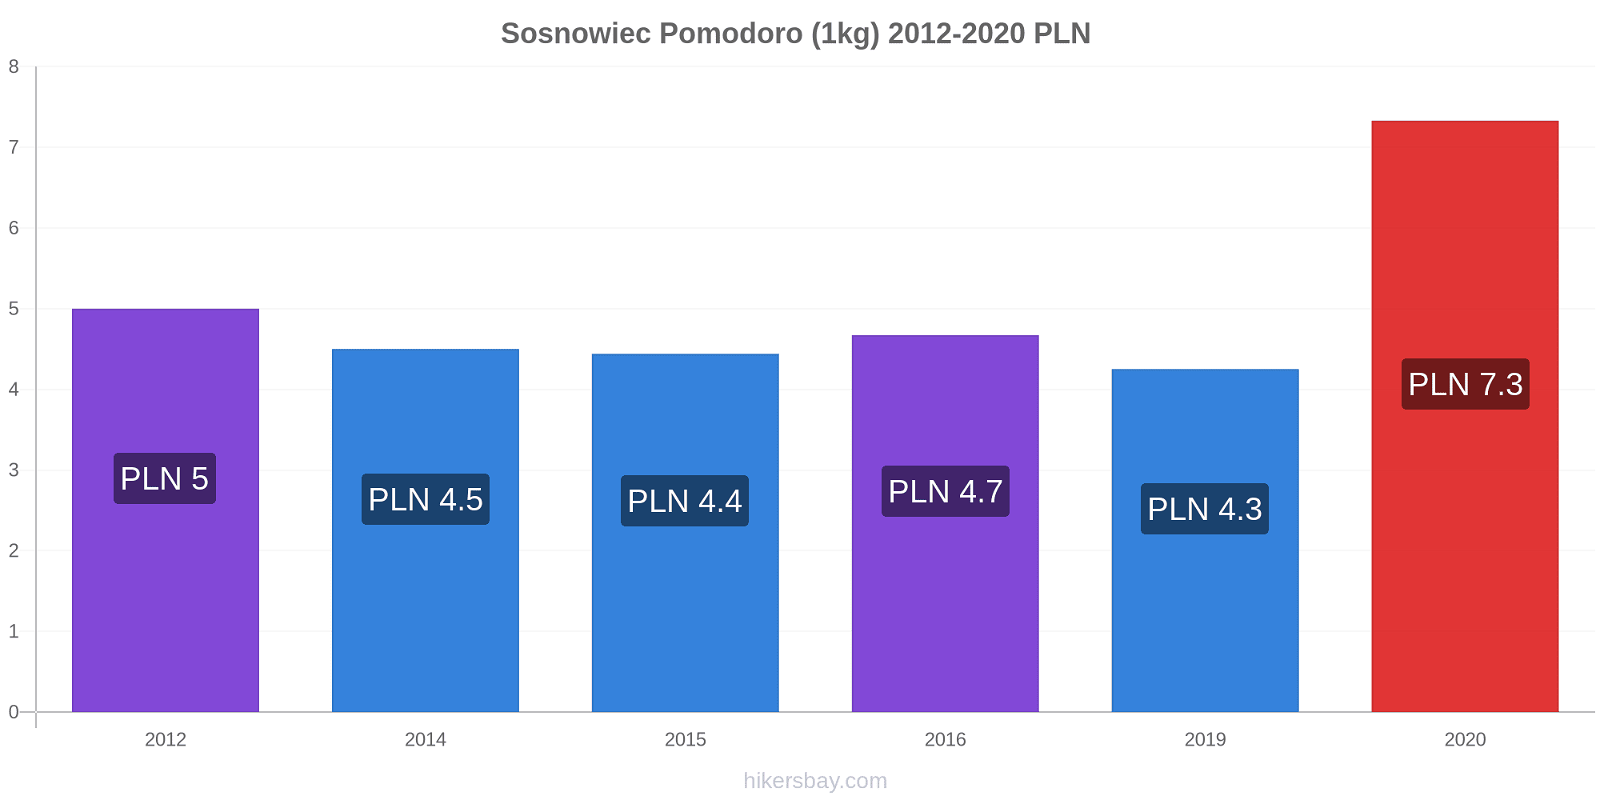 Sosnowiec variazioni di prezzo Pomodoro (1kg) hikersbay.com